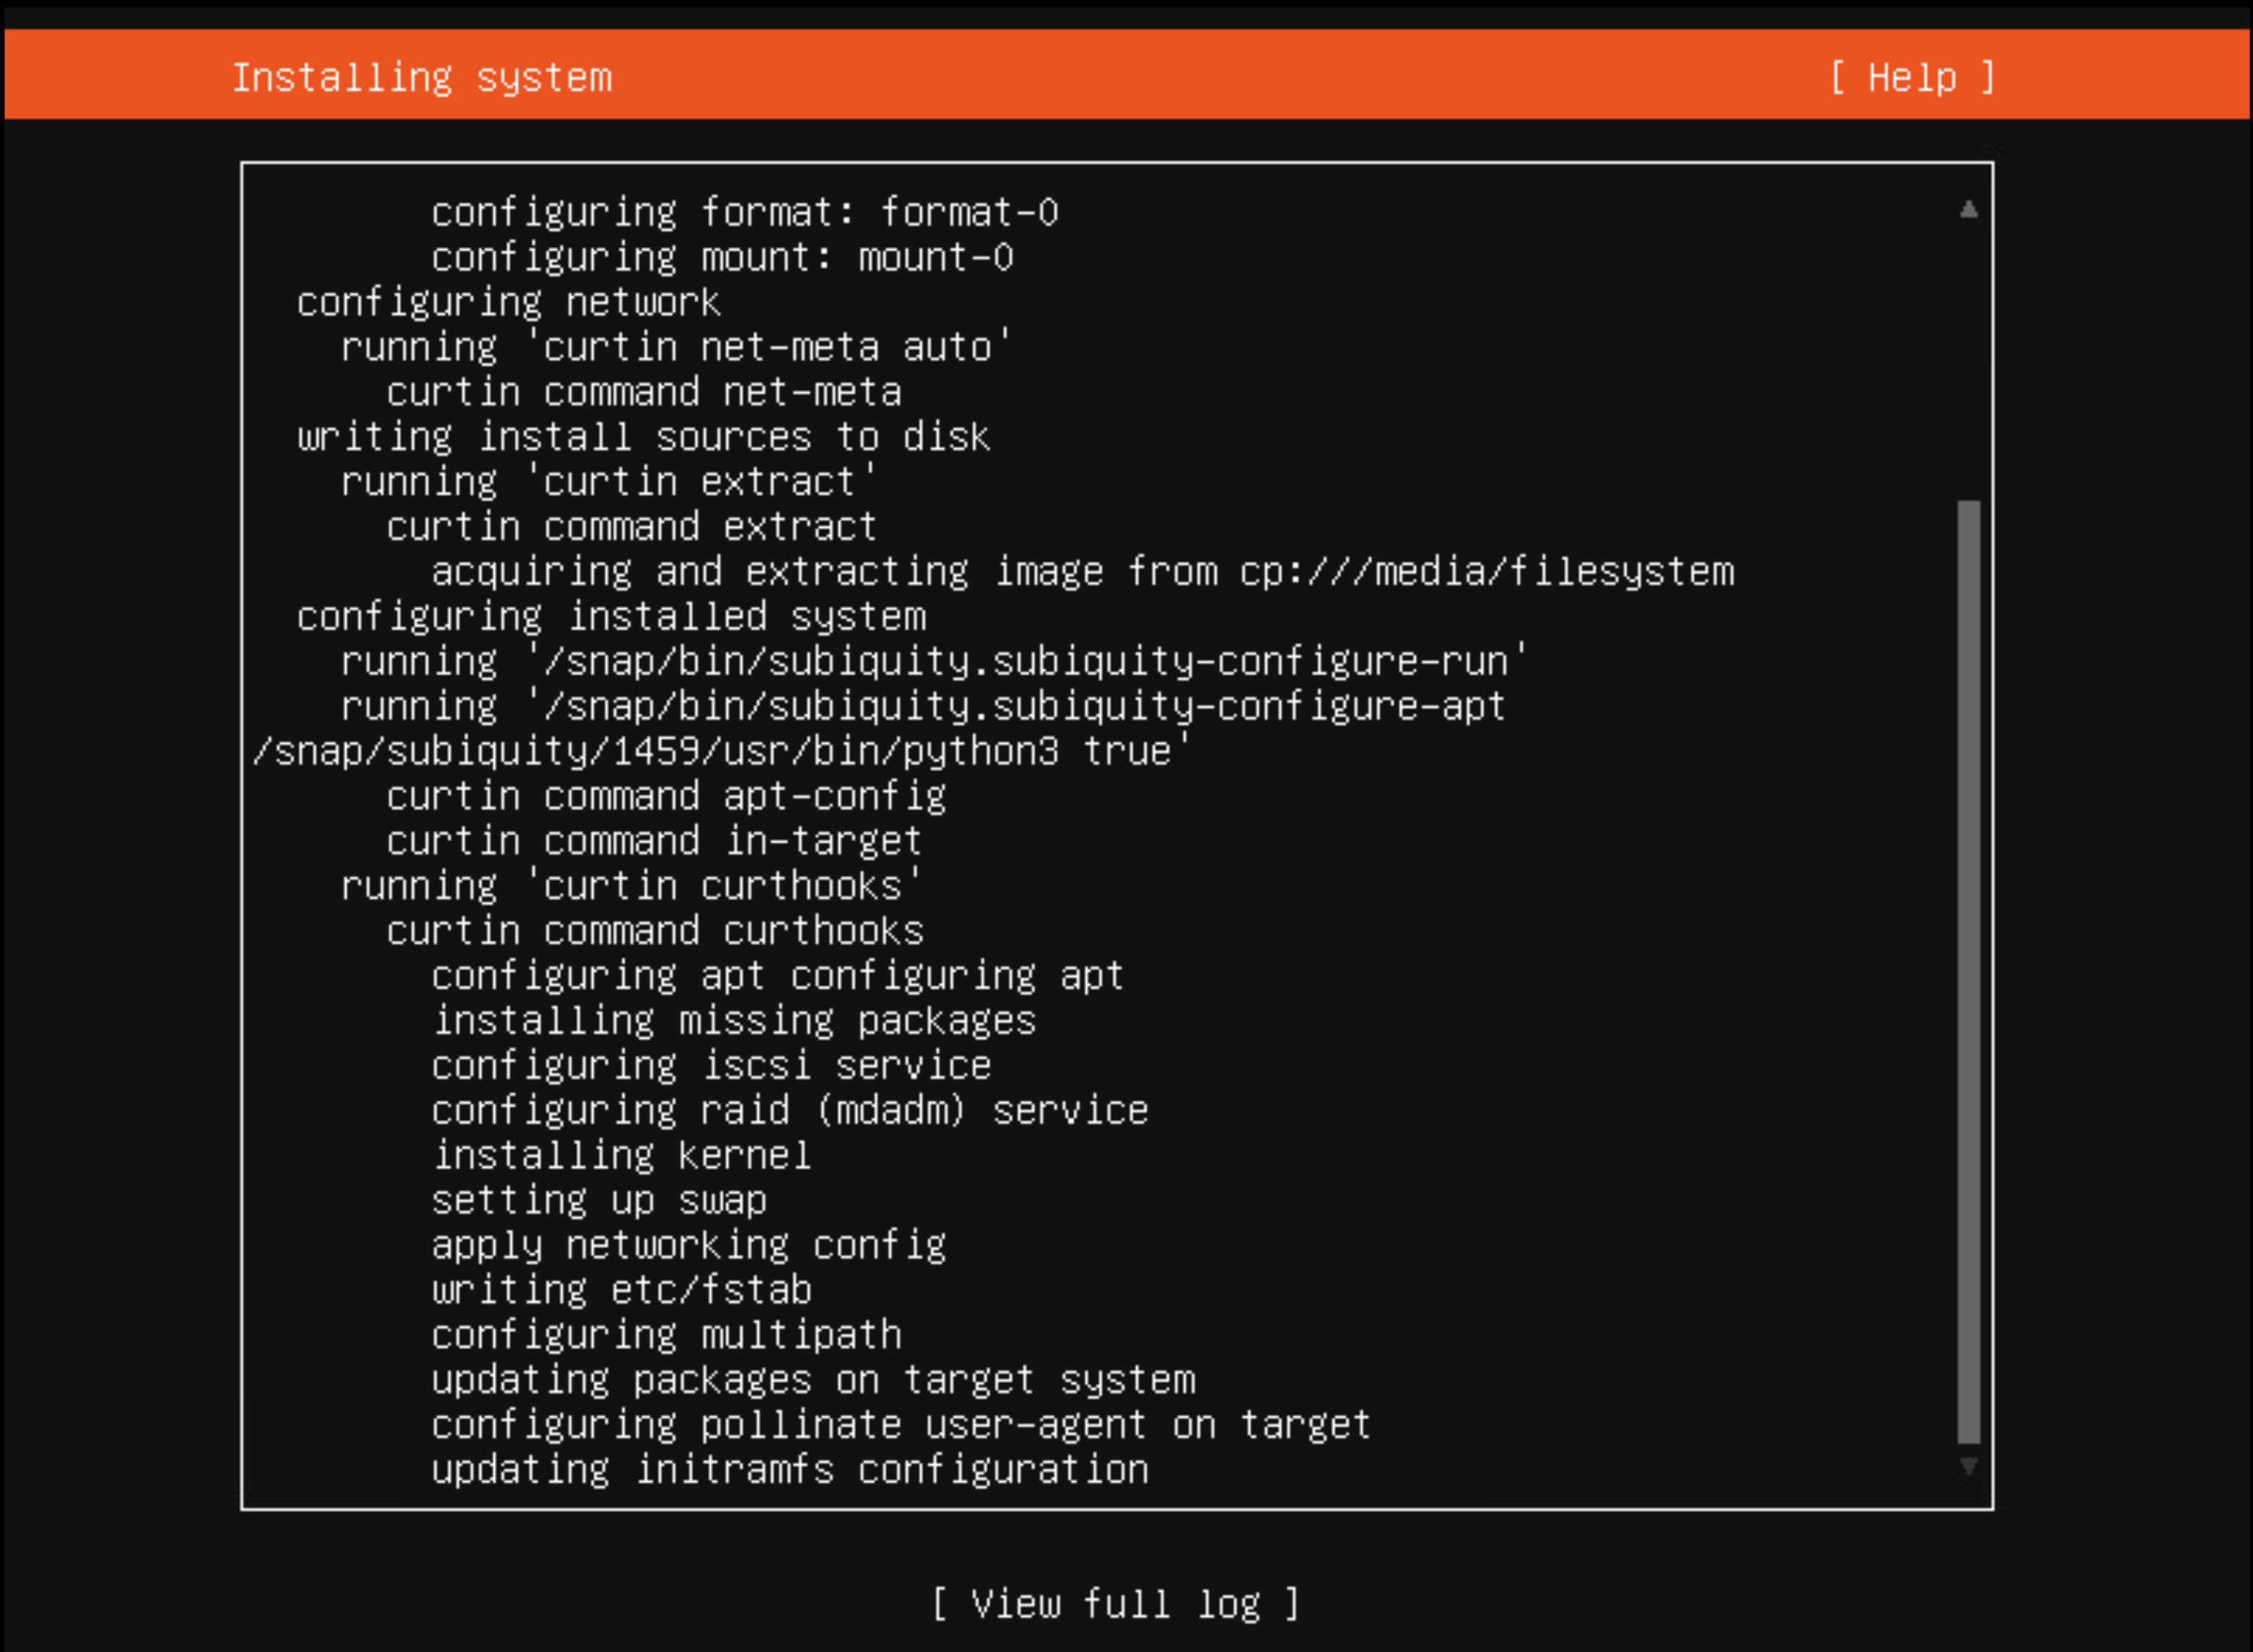 Eighteenth screenshot of an Ubuntu installation.